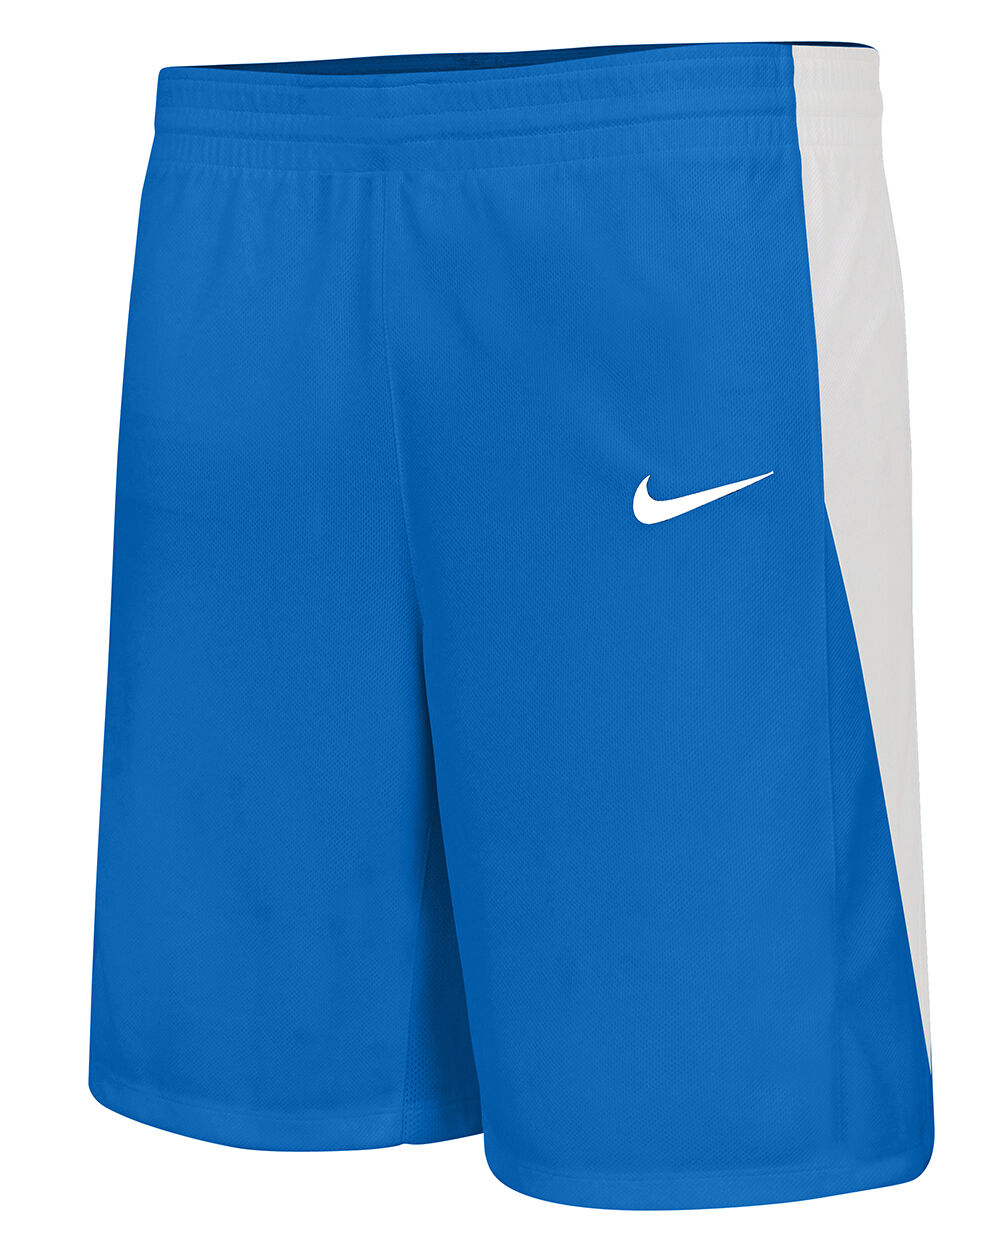 Pantalón corto de baloncesto Nike Team Azul Real para Niño - NT0202-463